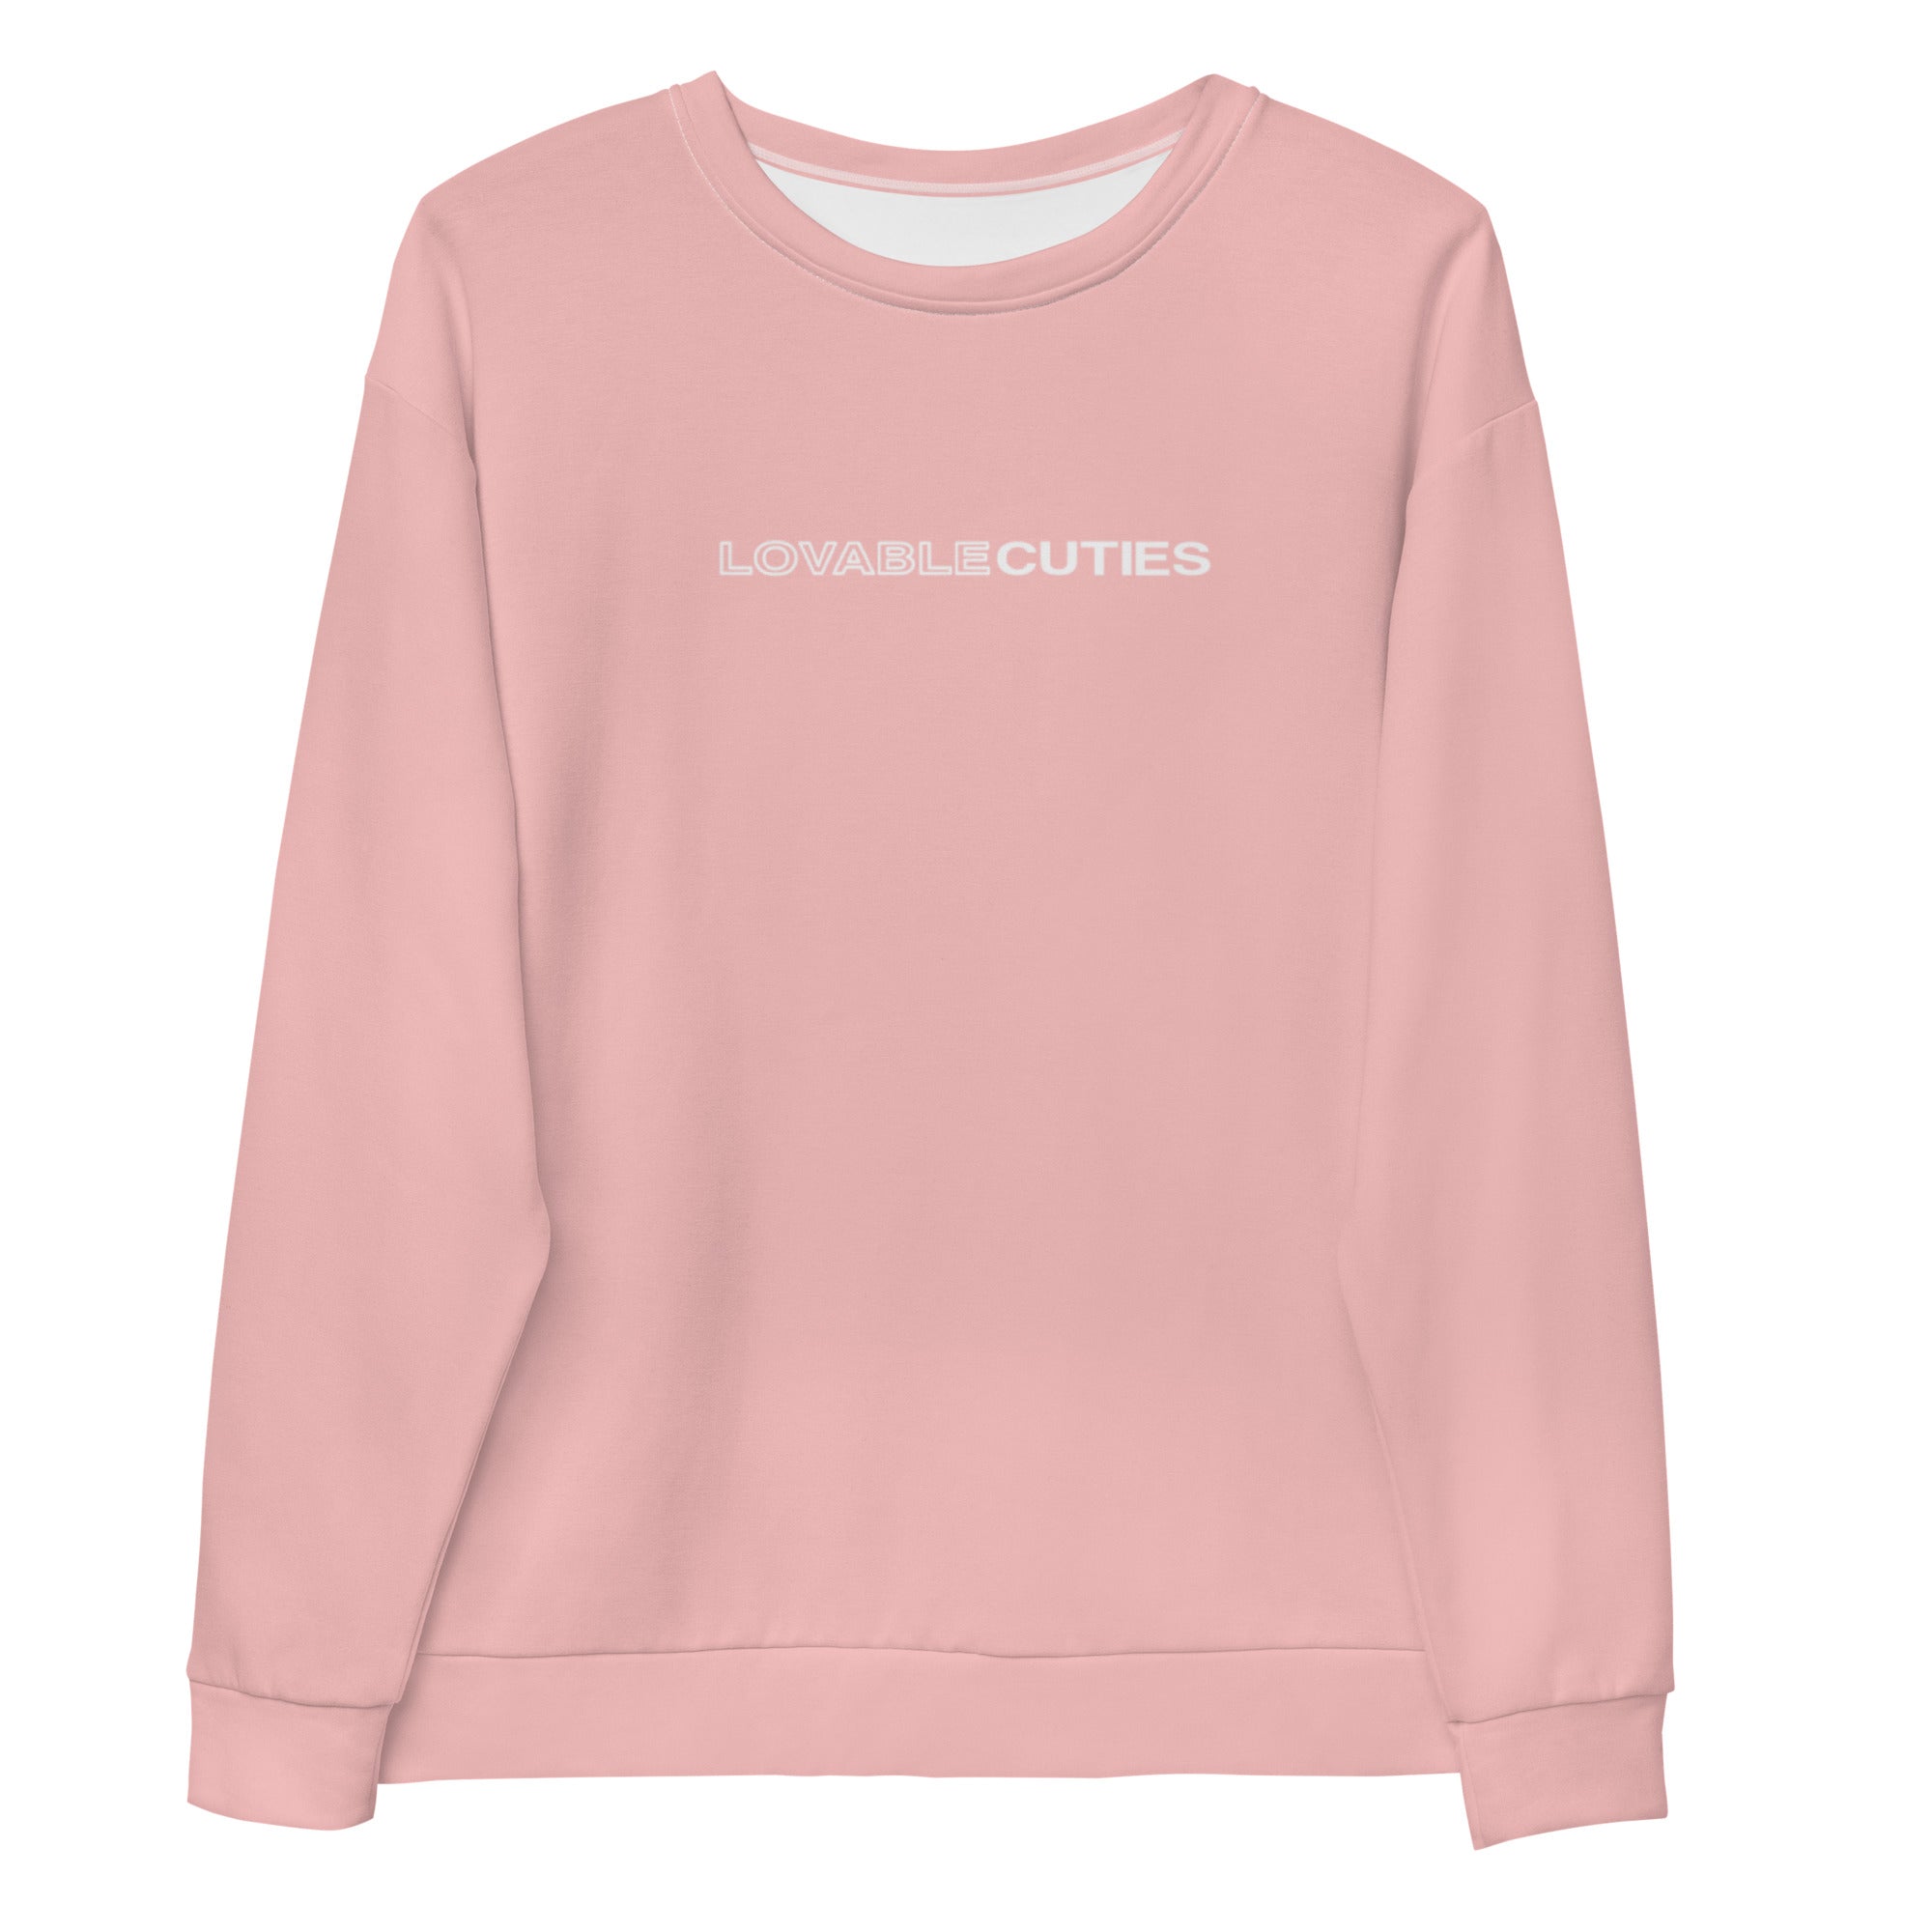 Lovable Cuties Pink Sweatshirt